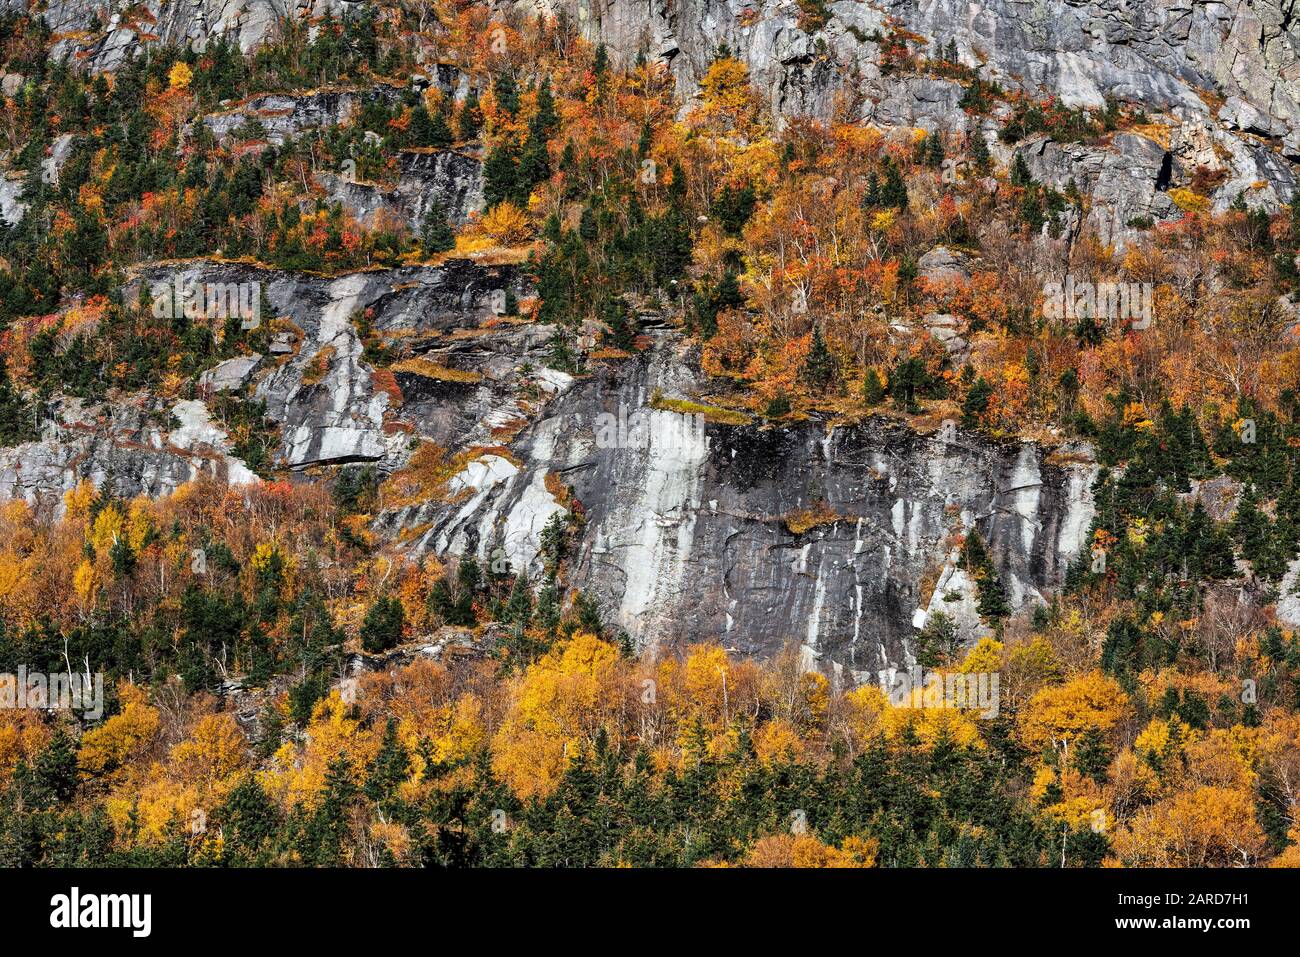 White Mountains autumn foliage, Franconia State Park, New Hampshire, USA. Stock Photo